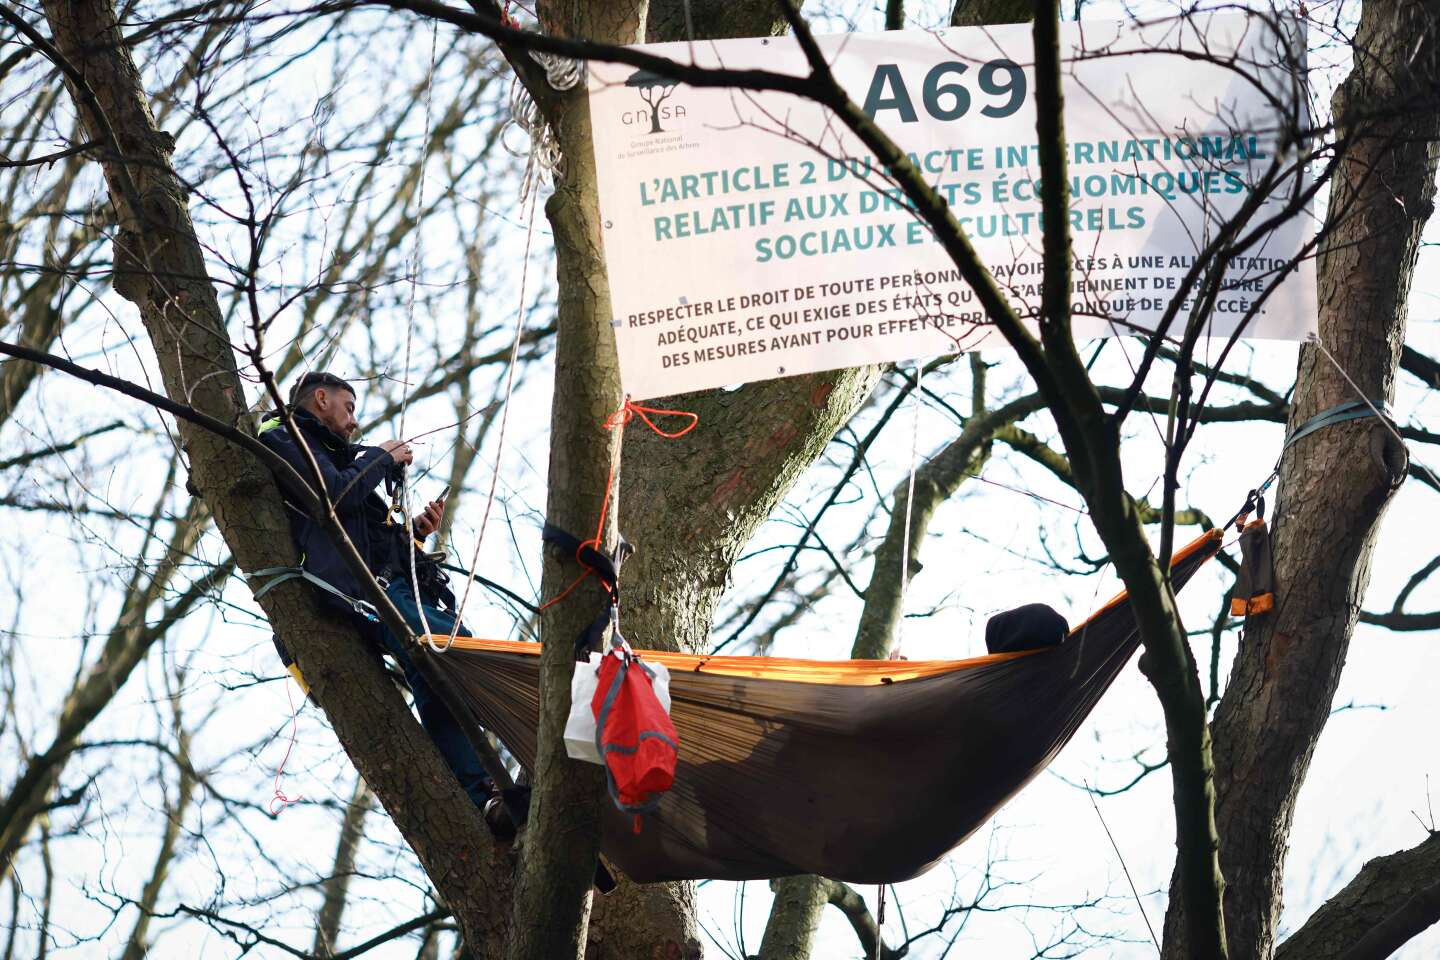 Autoroute A69 : des écologistes perchés dans des arbres devant la Cour européenne des droits de l’homme